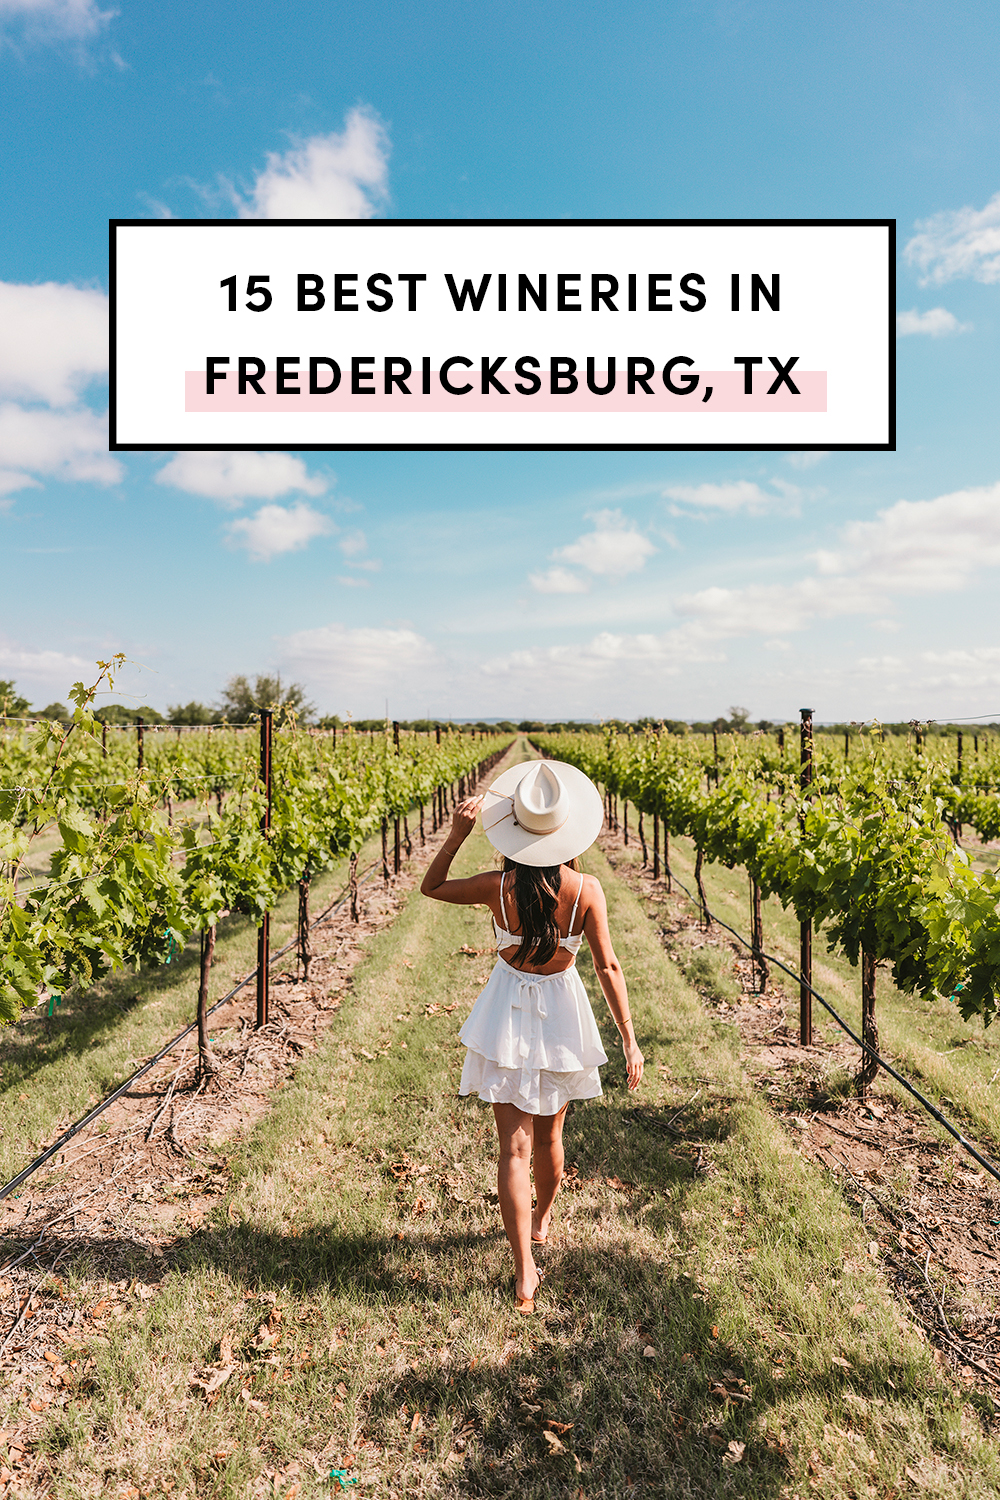 Best wineries & vineyards in Fredericksburg Texas